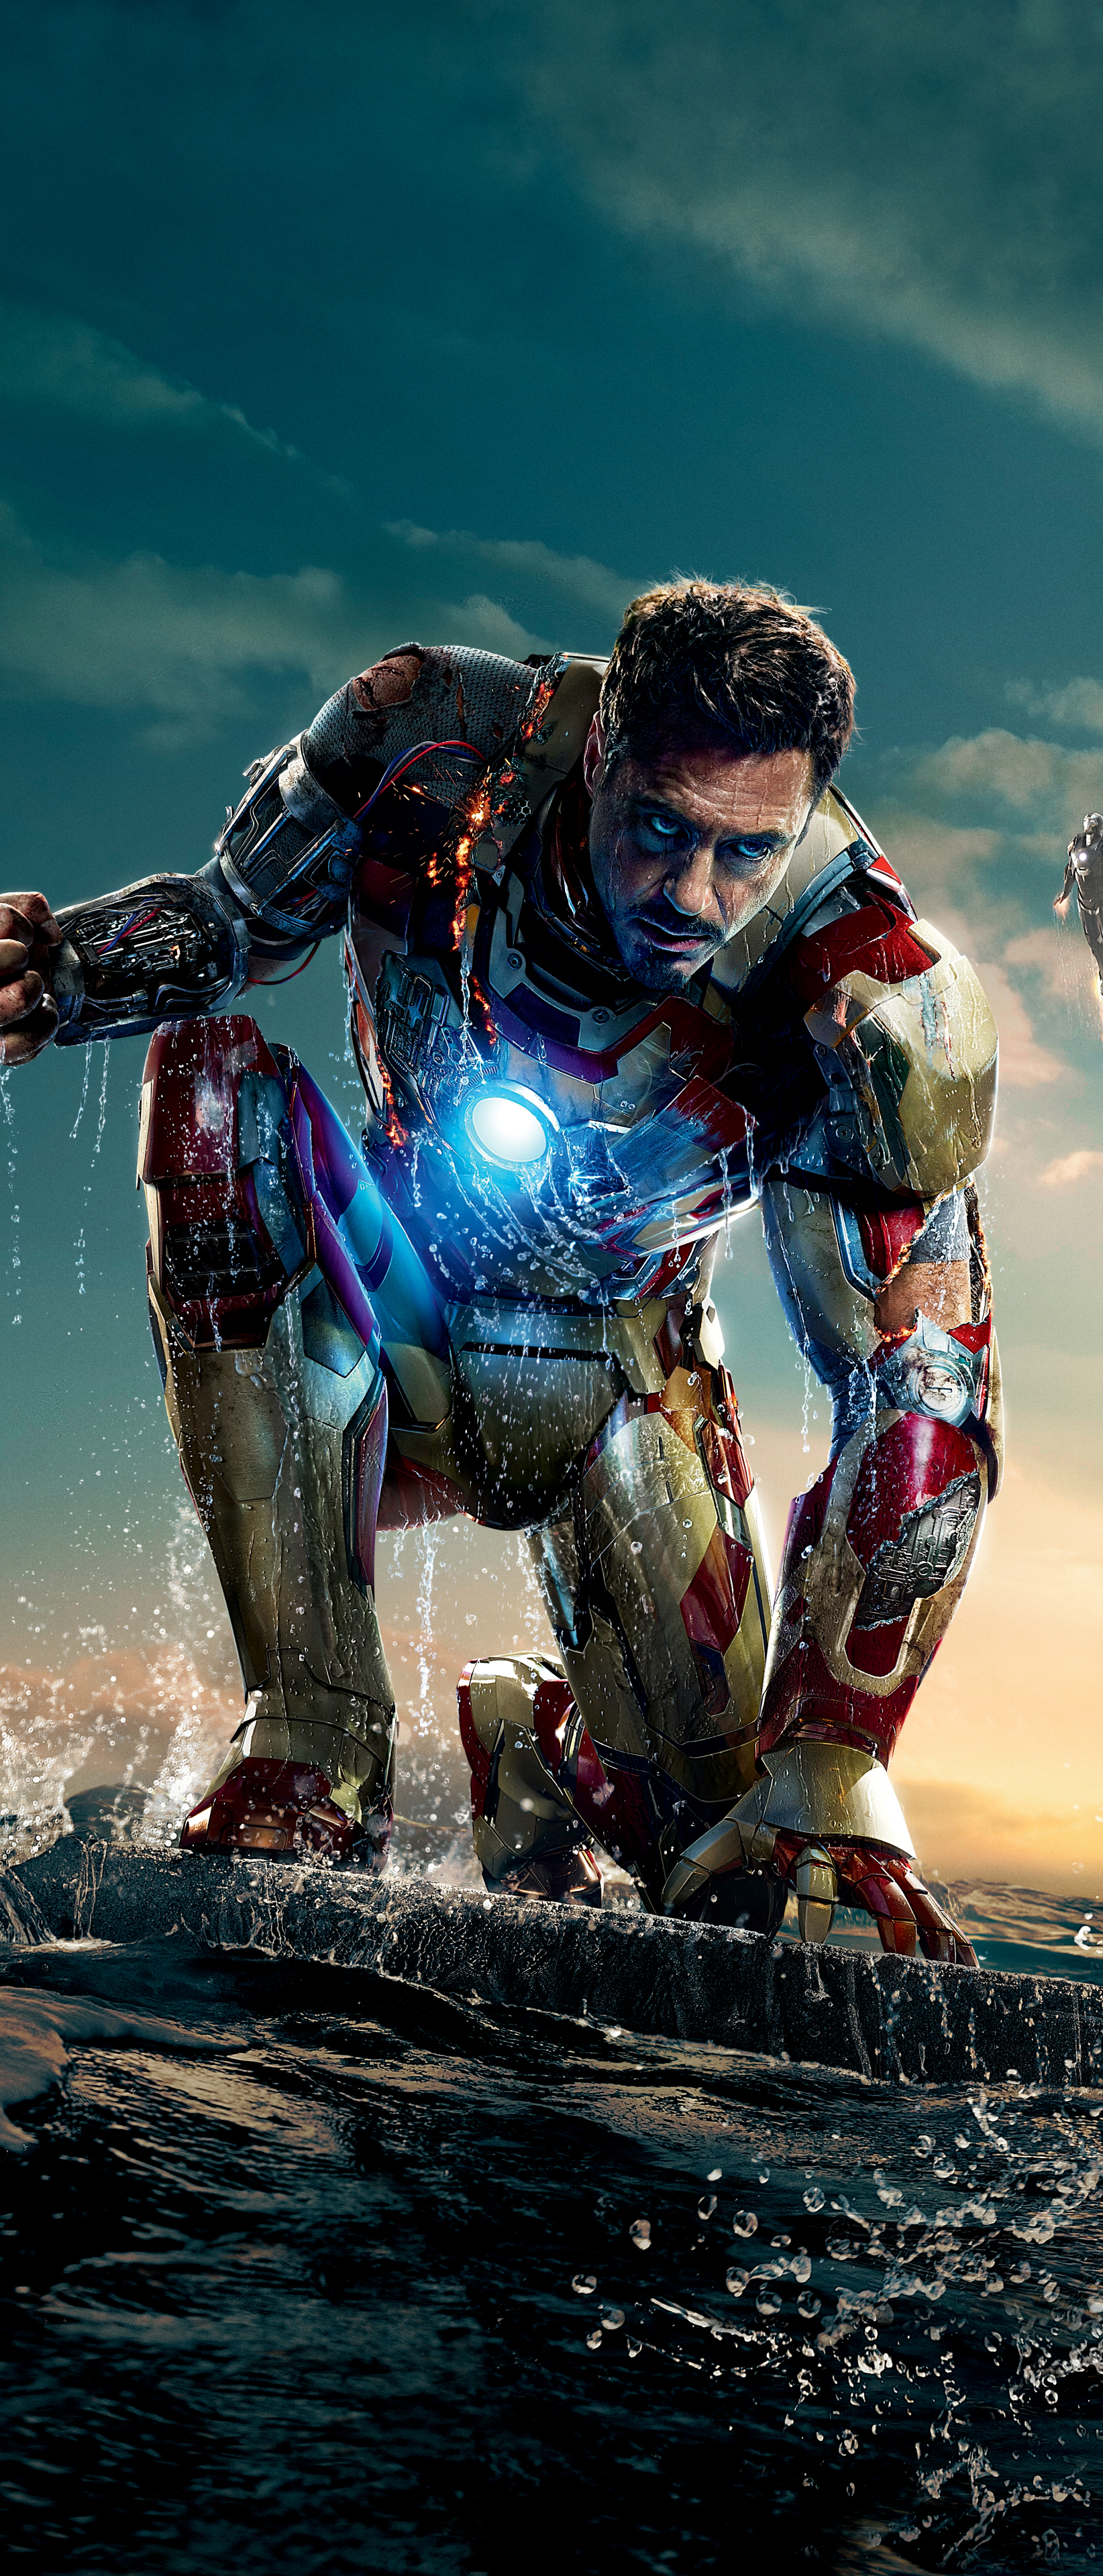 Descarga gratuita de fondo de pantalla para móvil de Iron Man, Los Vengadores, Robert Downey Jr, Películas, Hombre De Acero, Tony Stark, Iron Man 3, Vengadores.